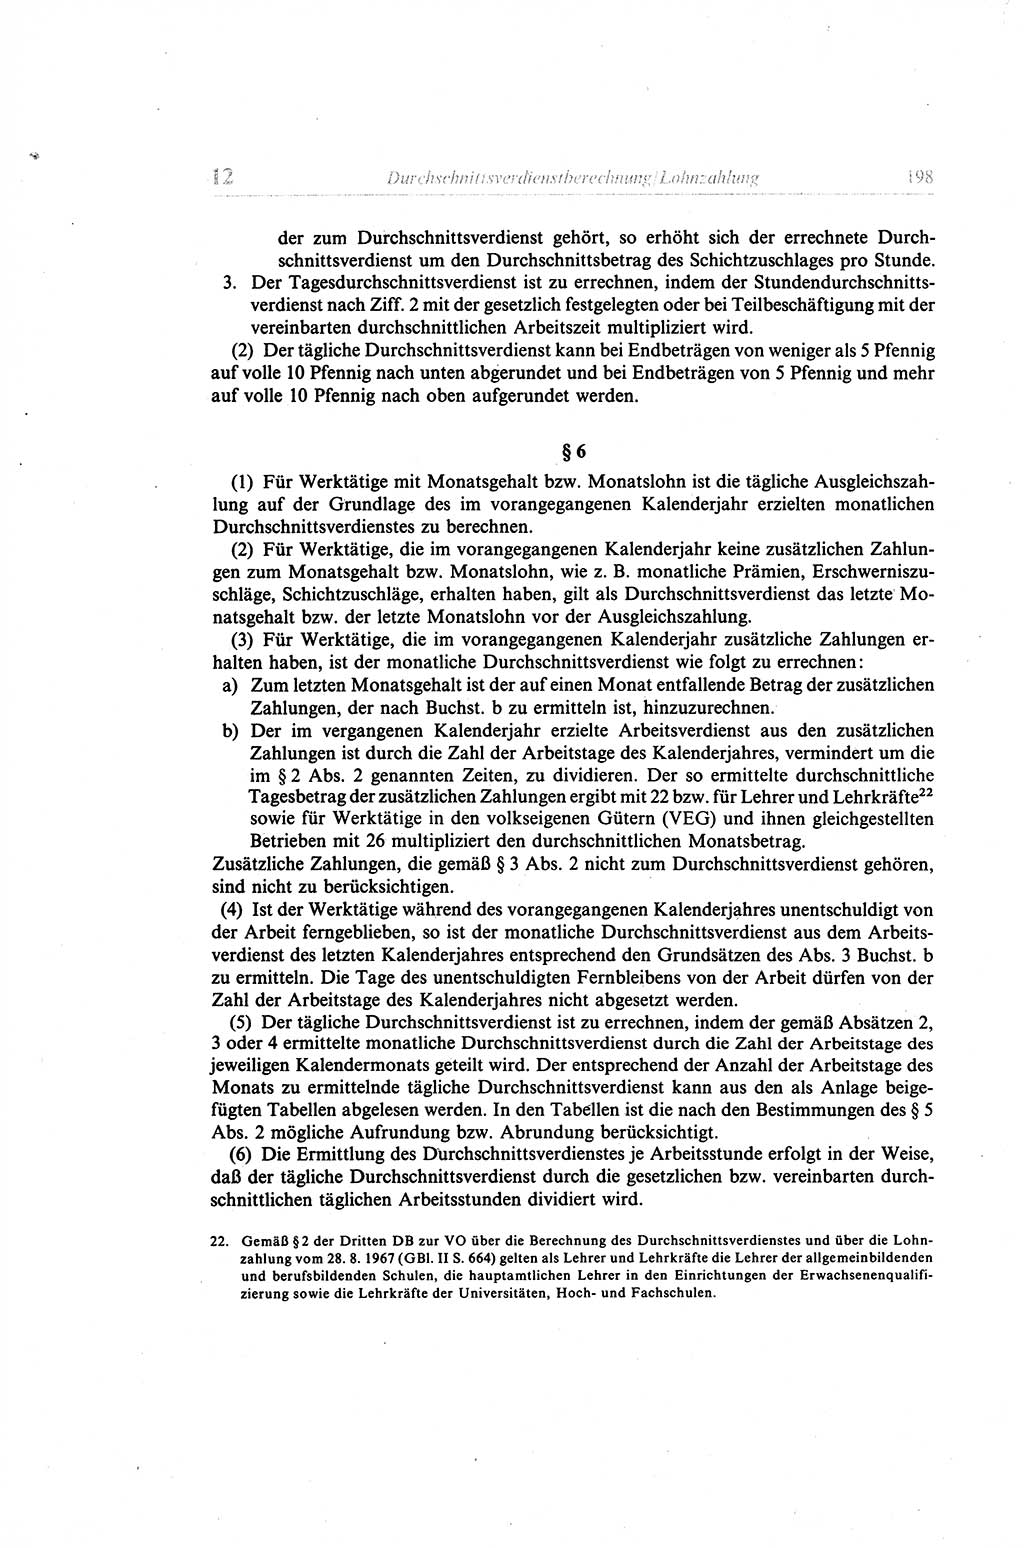 Gesetzbuch der Arbeit (GBA) und andere ausgewählte rechtliche Bestimmungen [Deutsche Demokratische Republik (DDR)] 1968, Seite 198 (GBA DDR 1968, S. 198)